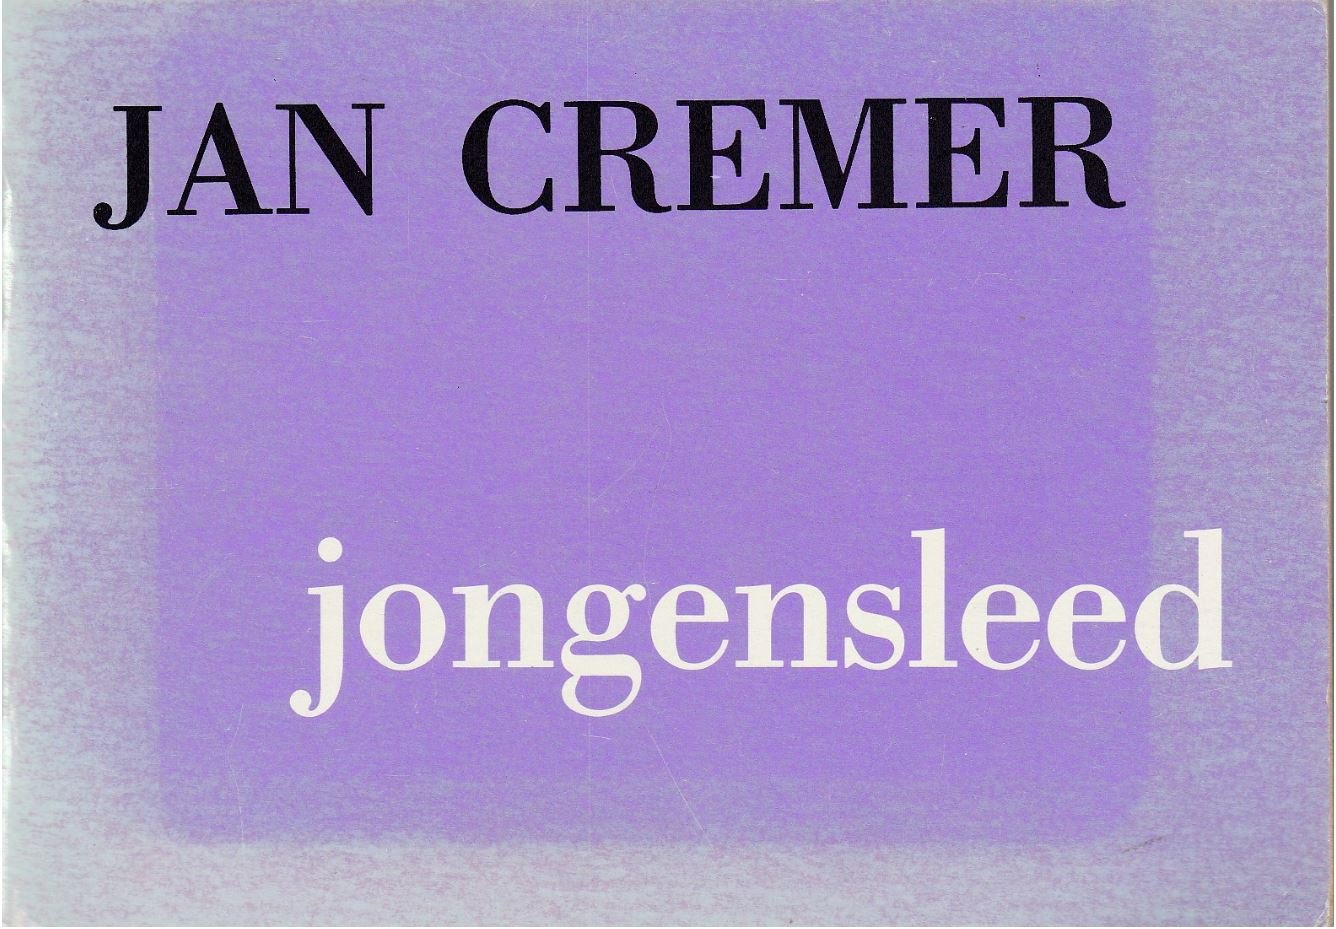 CREMER, JAN - Jongensleed